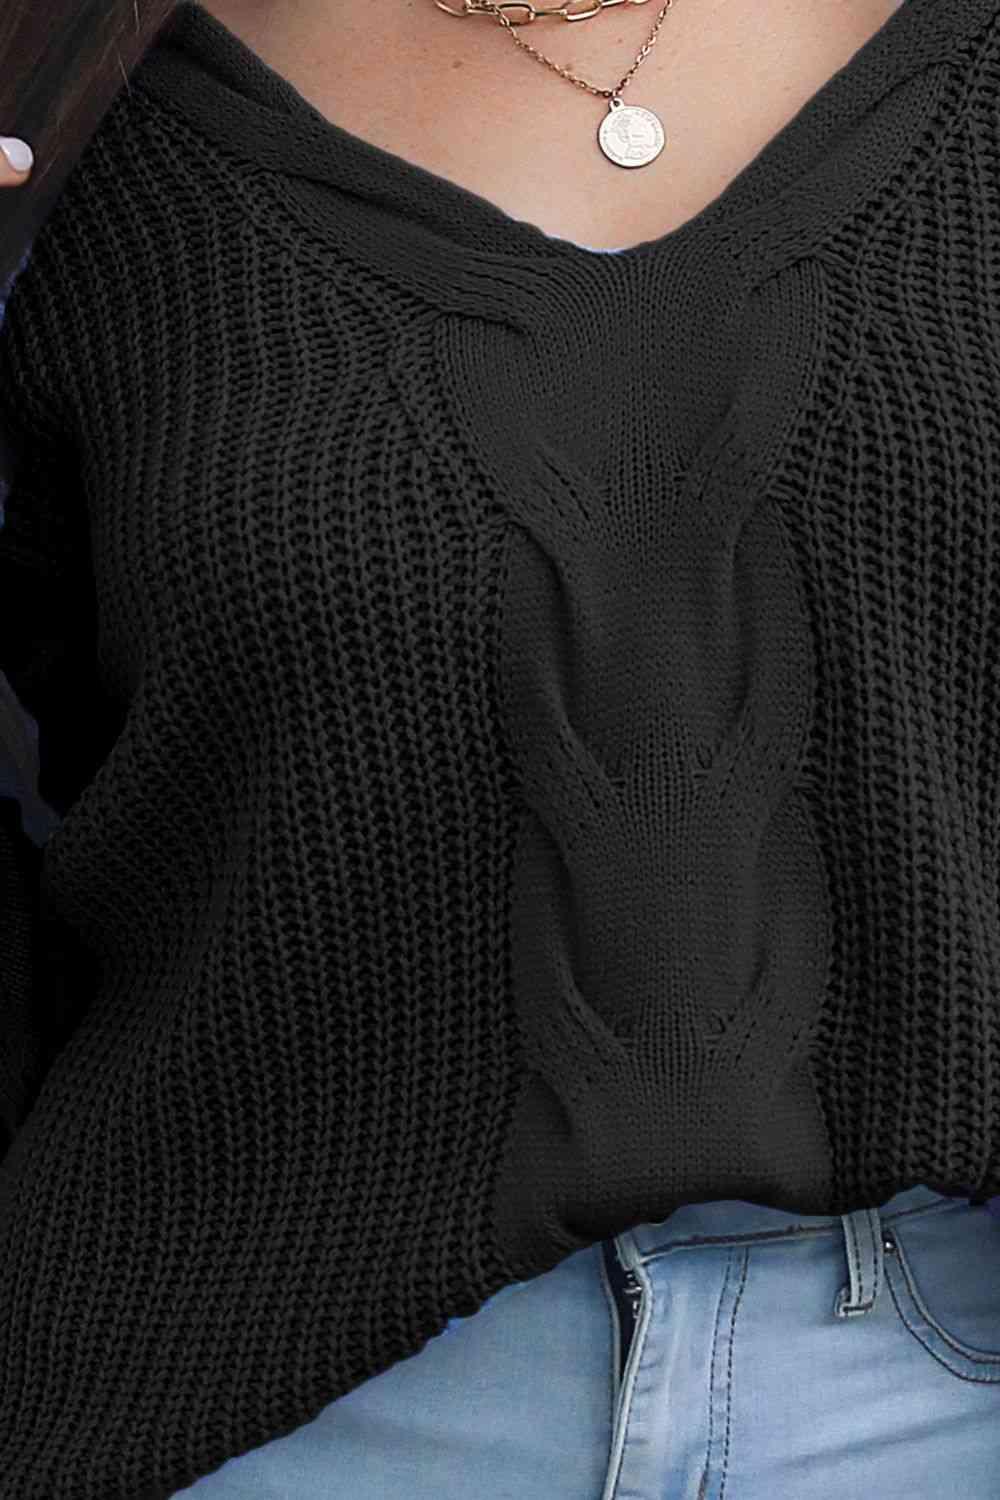 Cold Season Leisure Cable Knit V Neck Sweater - MXSTUDIO.COM